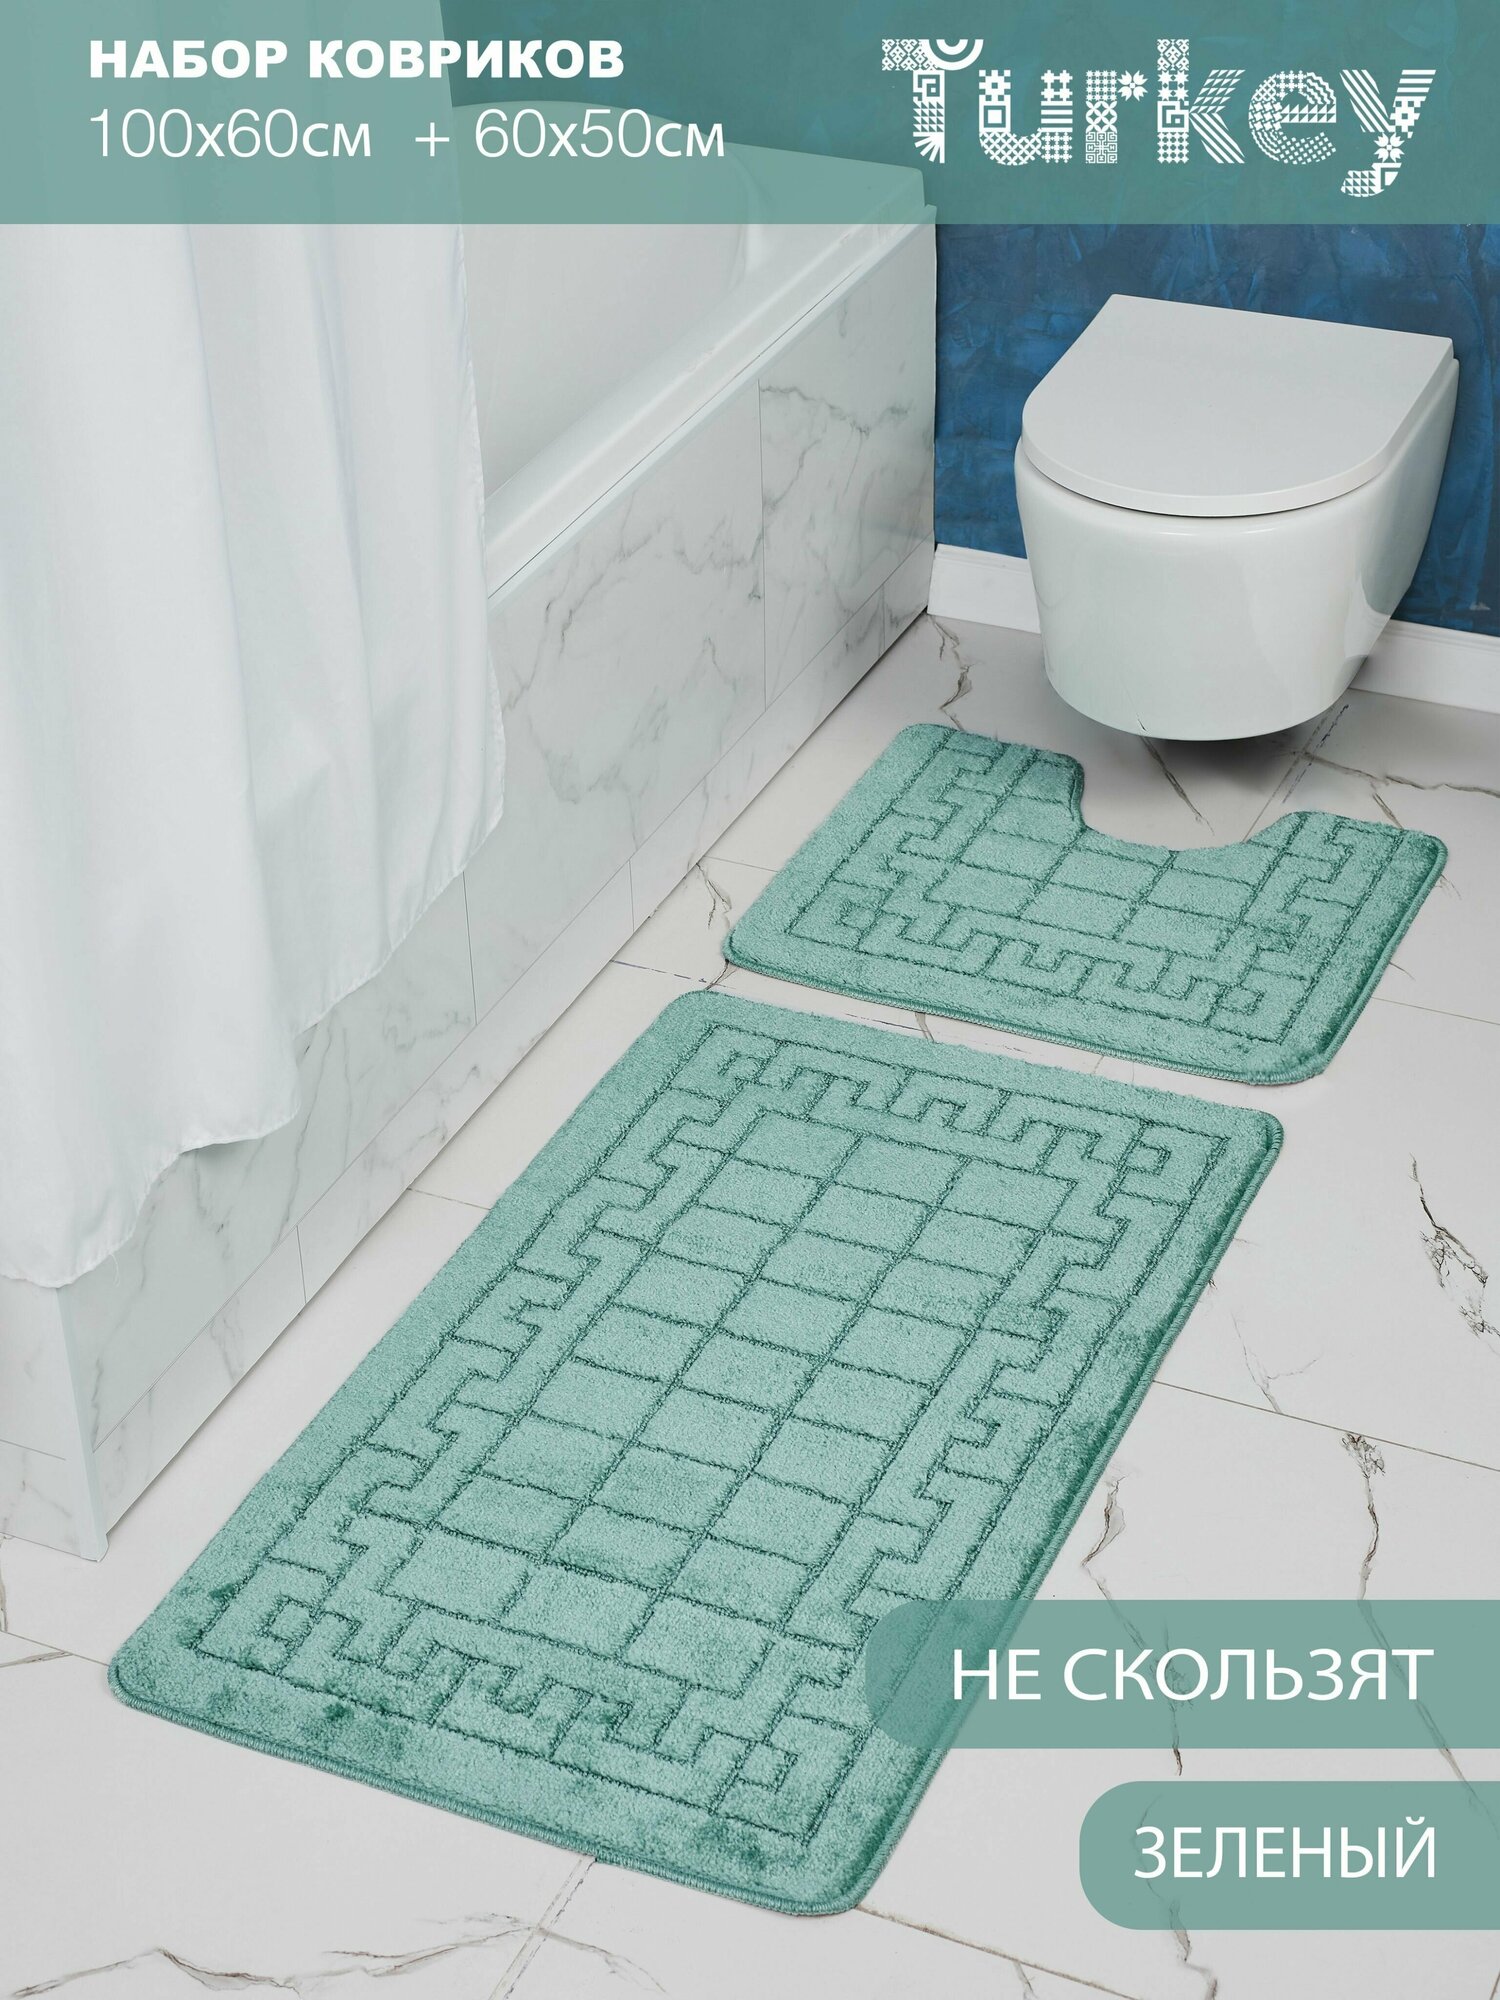 Набор противоскользящих ковриков для ванной и туалета, зеленый, Solin 100*60+50*60, 2 шт.